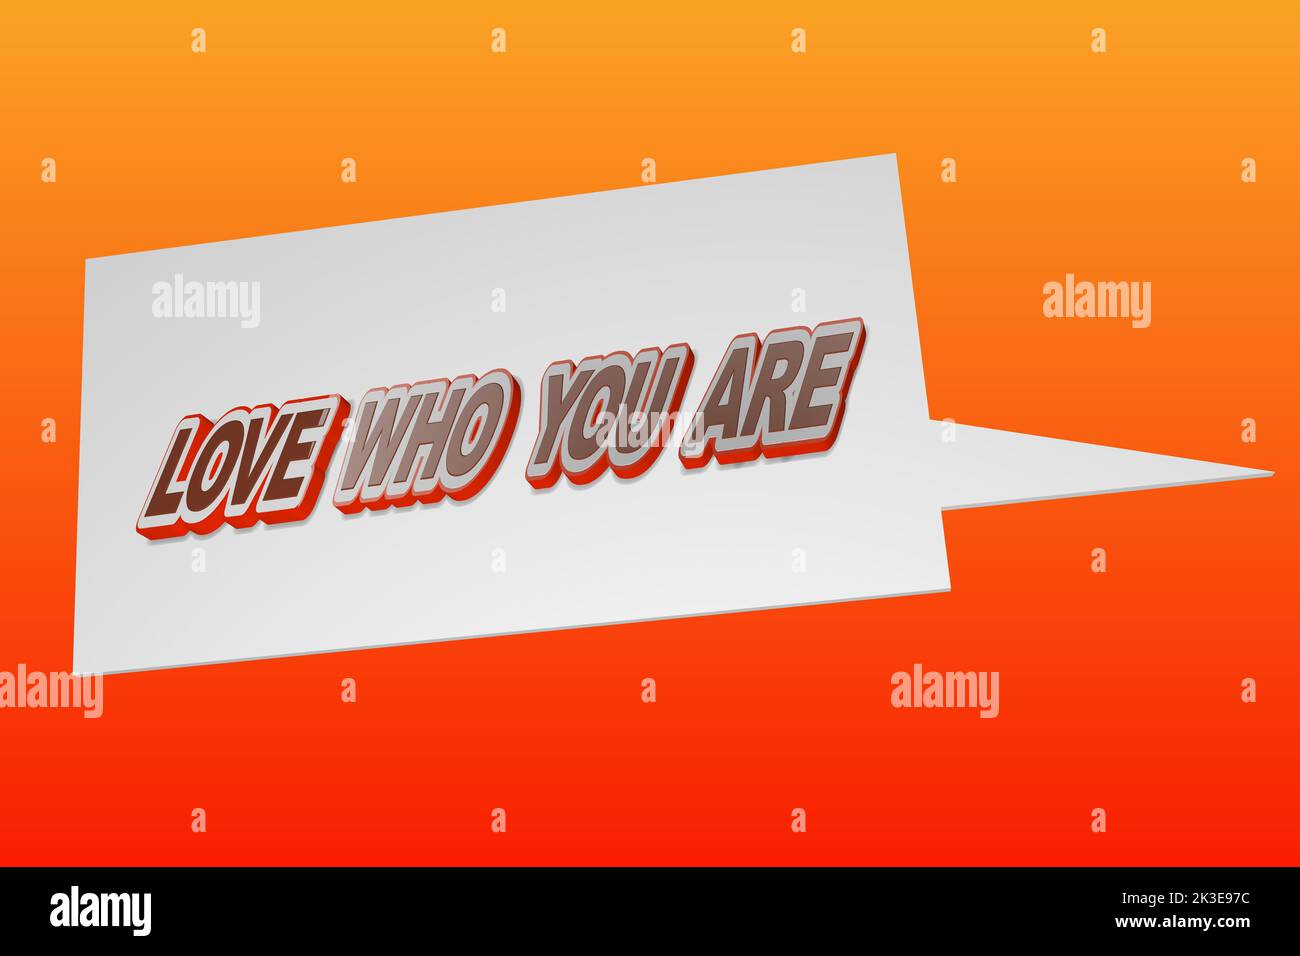 Citazione motivazionale di ispirazione Amore Chi siete, con la bolla di parola, su sfondo astratto rosso e arancione. Illustrazione del rendering 3D. Foto Stock